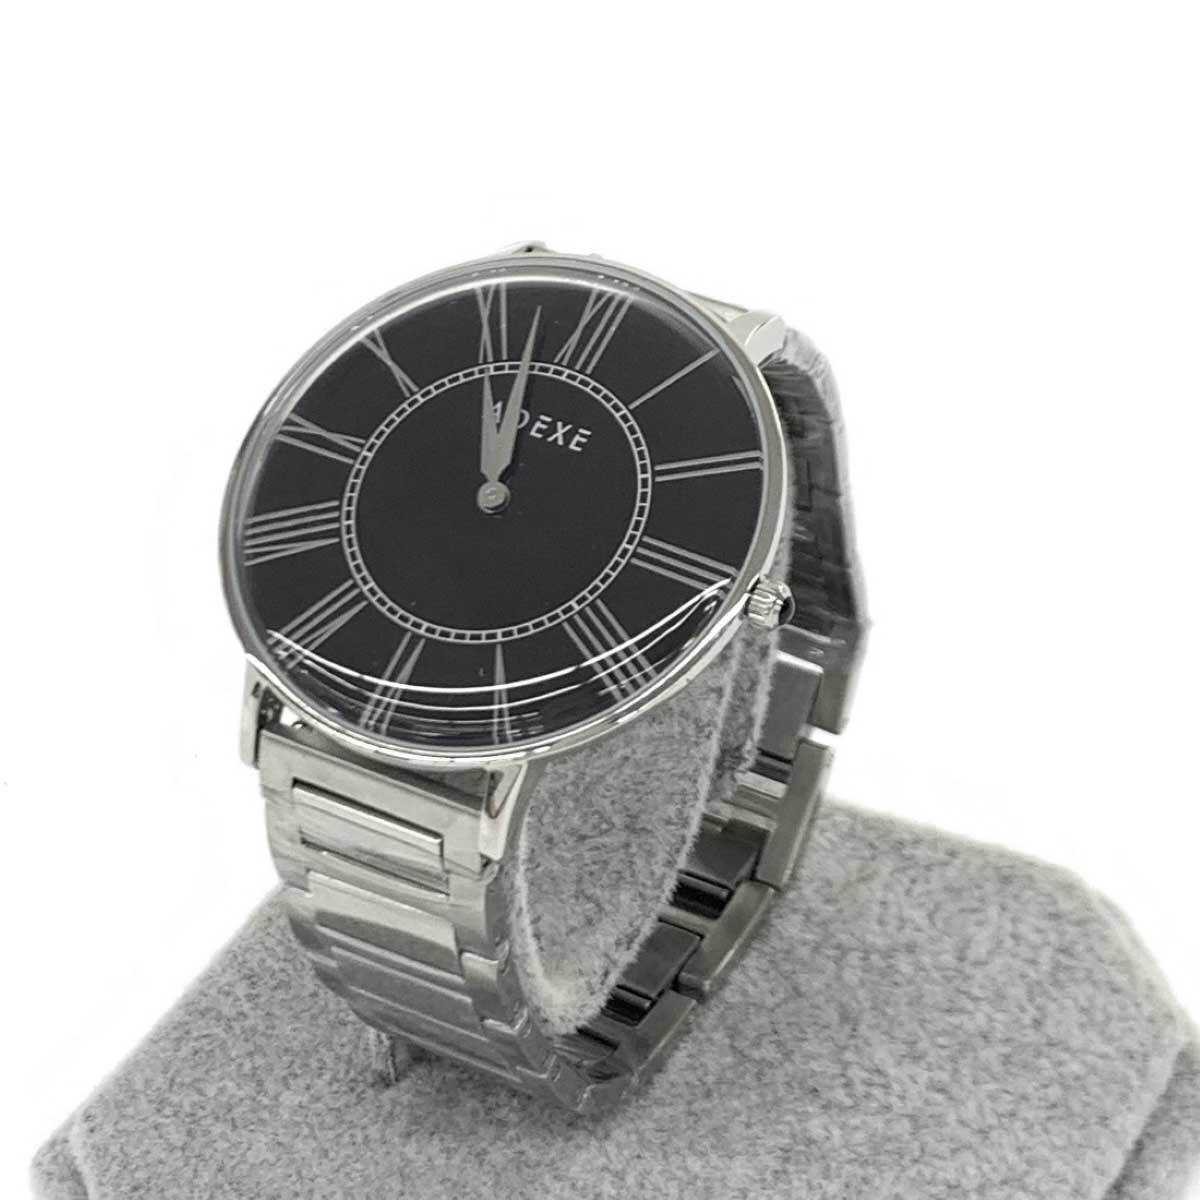 新品同様◆ADEXE アデクス 腕時計 クォーツ◆2578A-02 シルバーカラー×ブラック SS メンズ ウォッチ watch_画像1